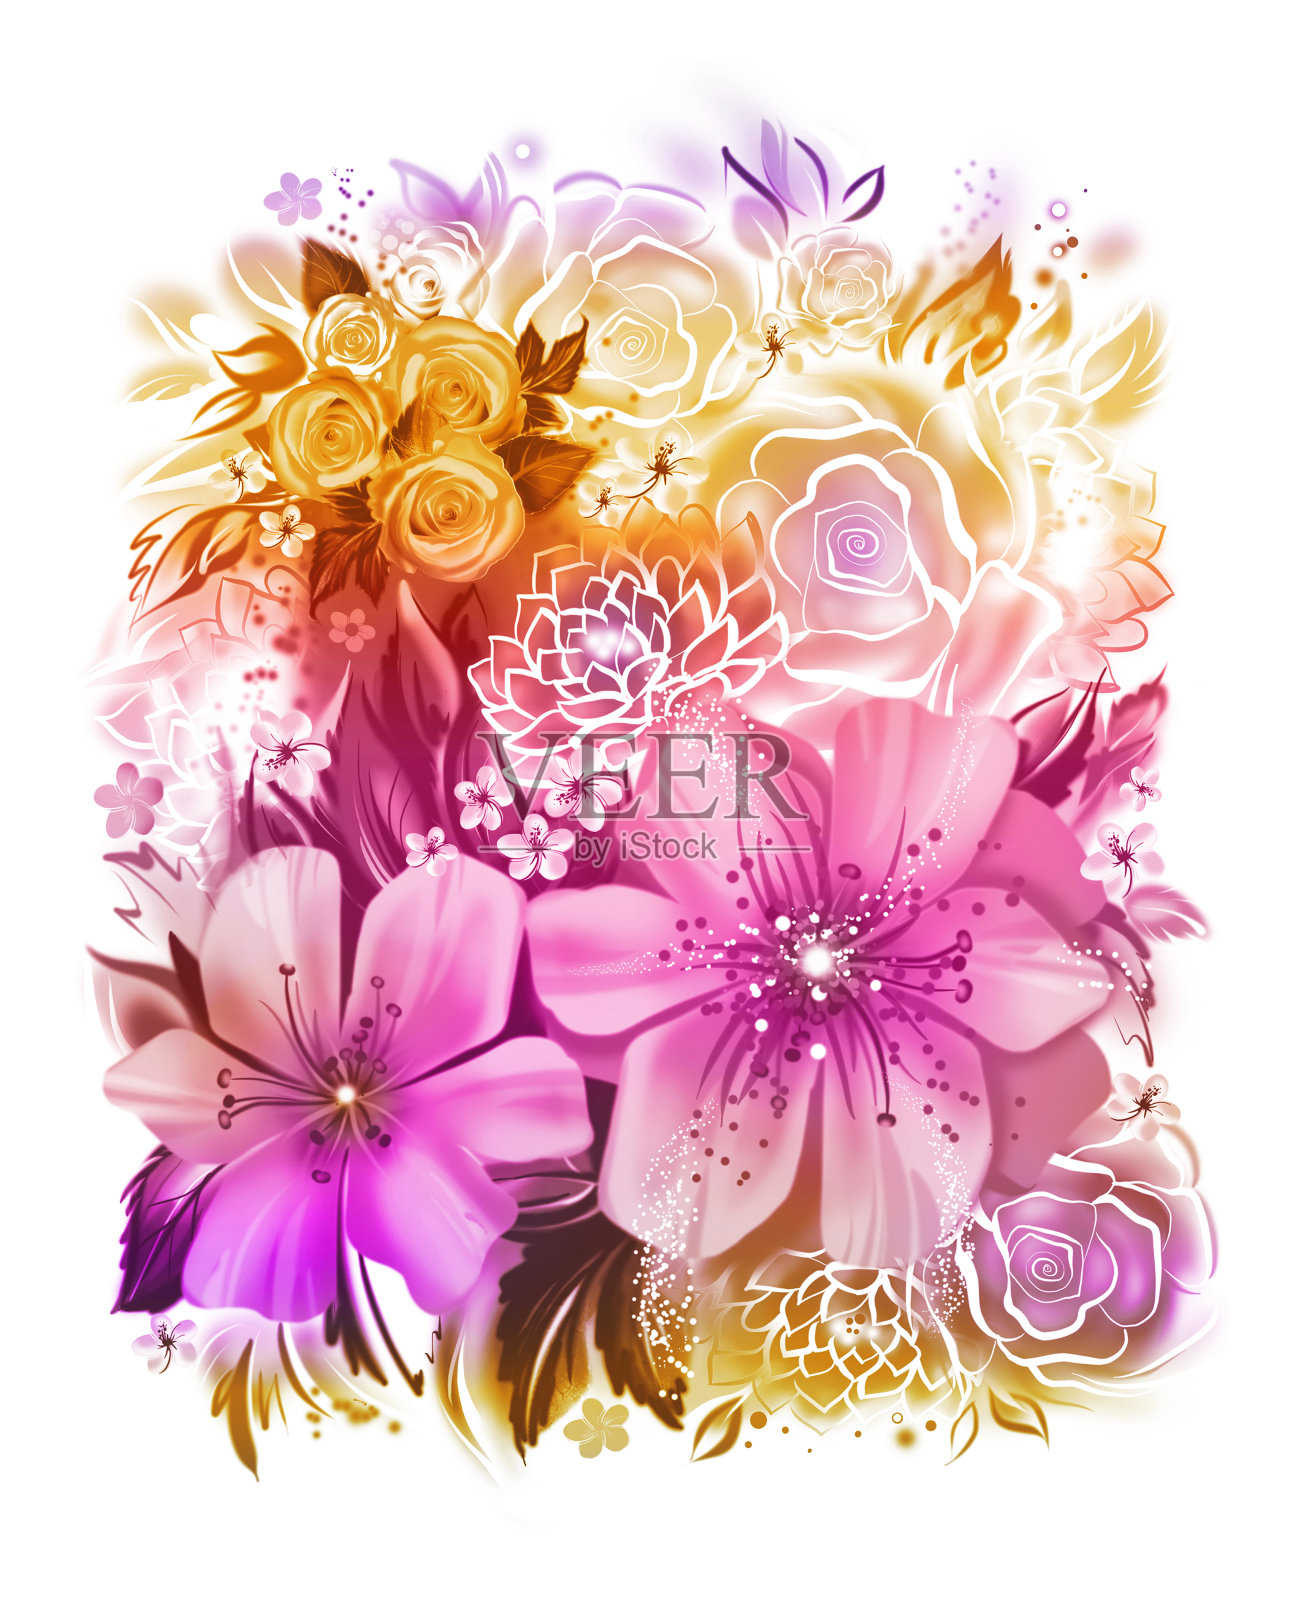 用水彩技术给花着色，玫瑰，雏菊和含羞草插画图片素材